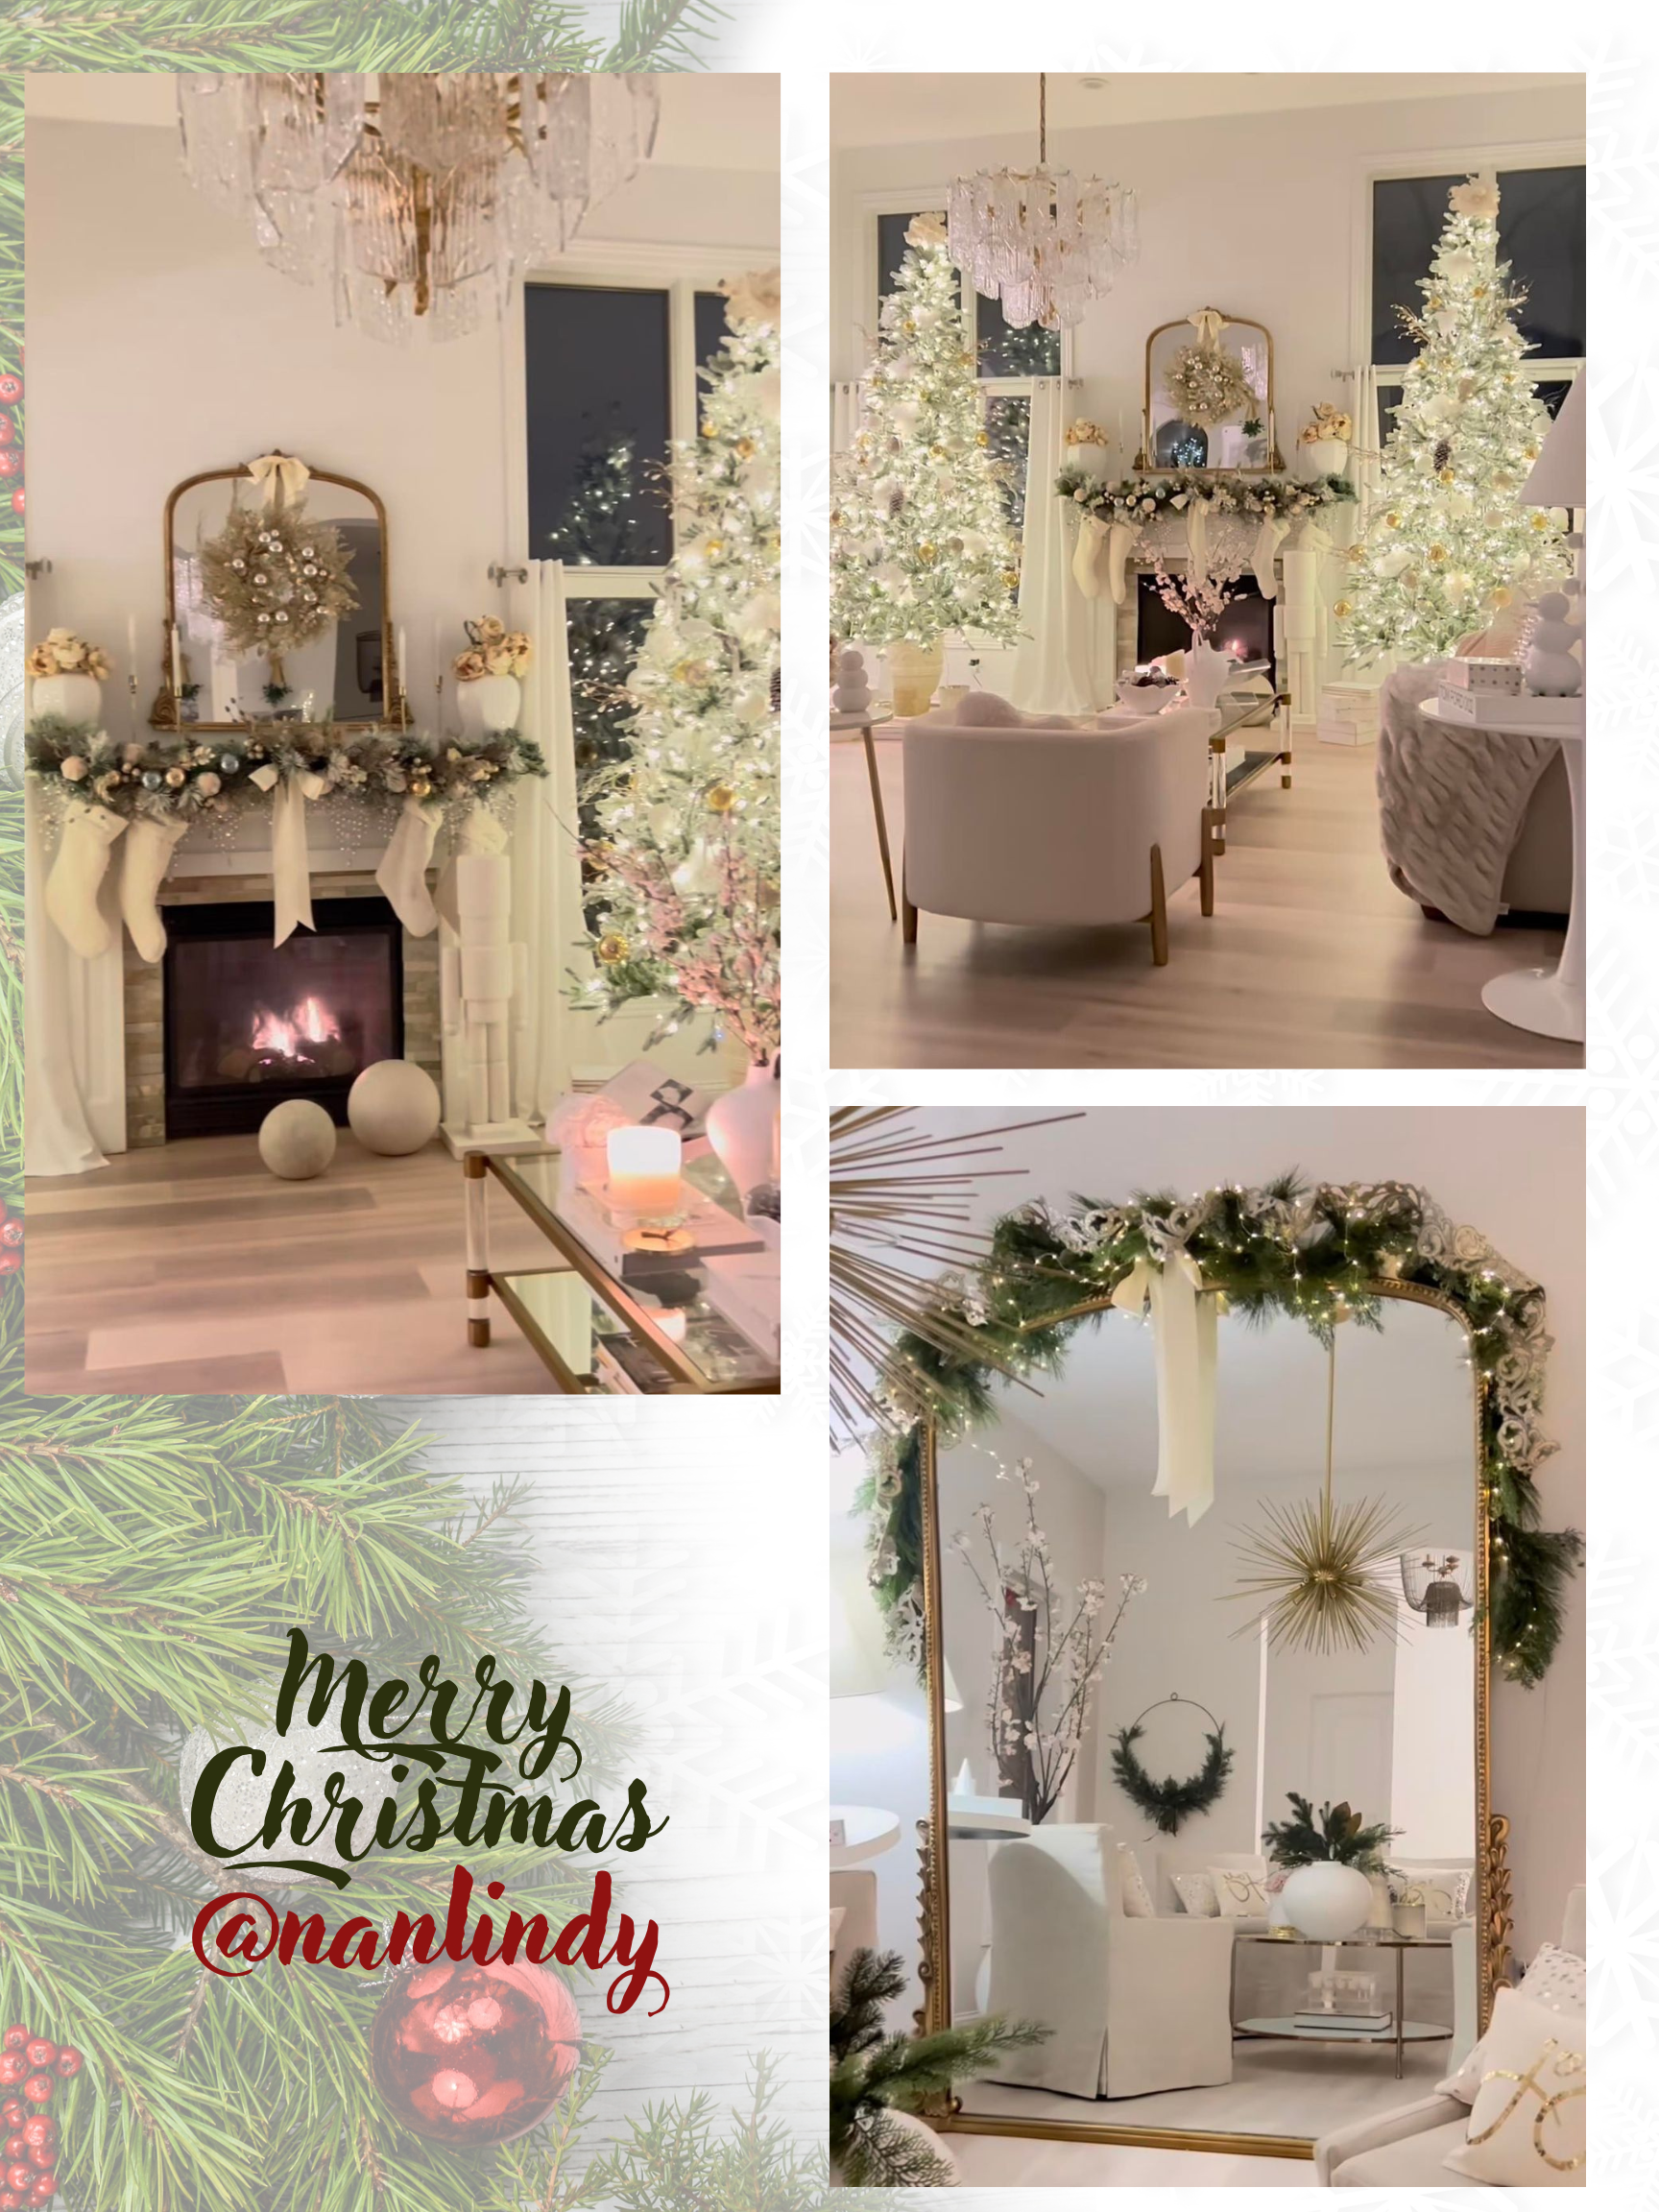 Christmas interior home decor and lights